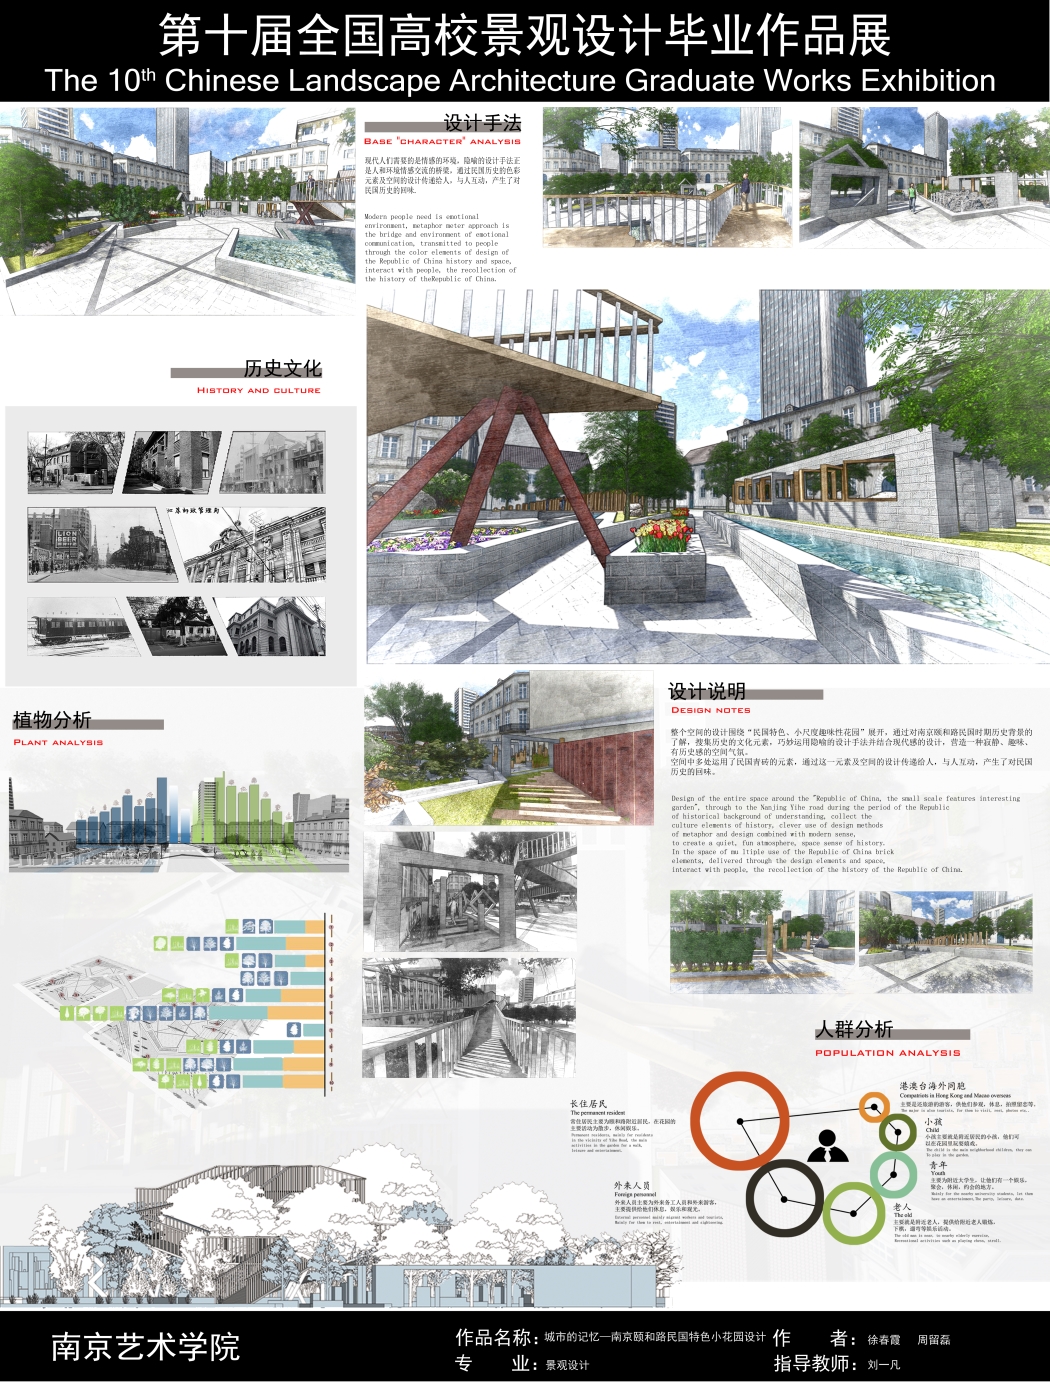 城市的记忆——南京颐和路民国特色小花园设计-2